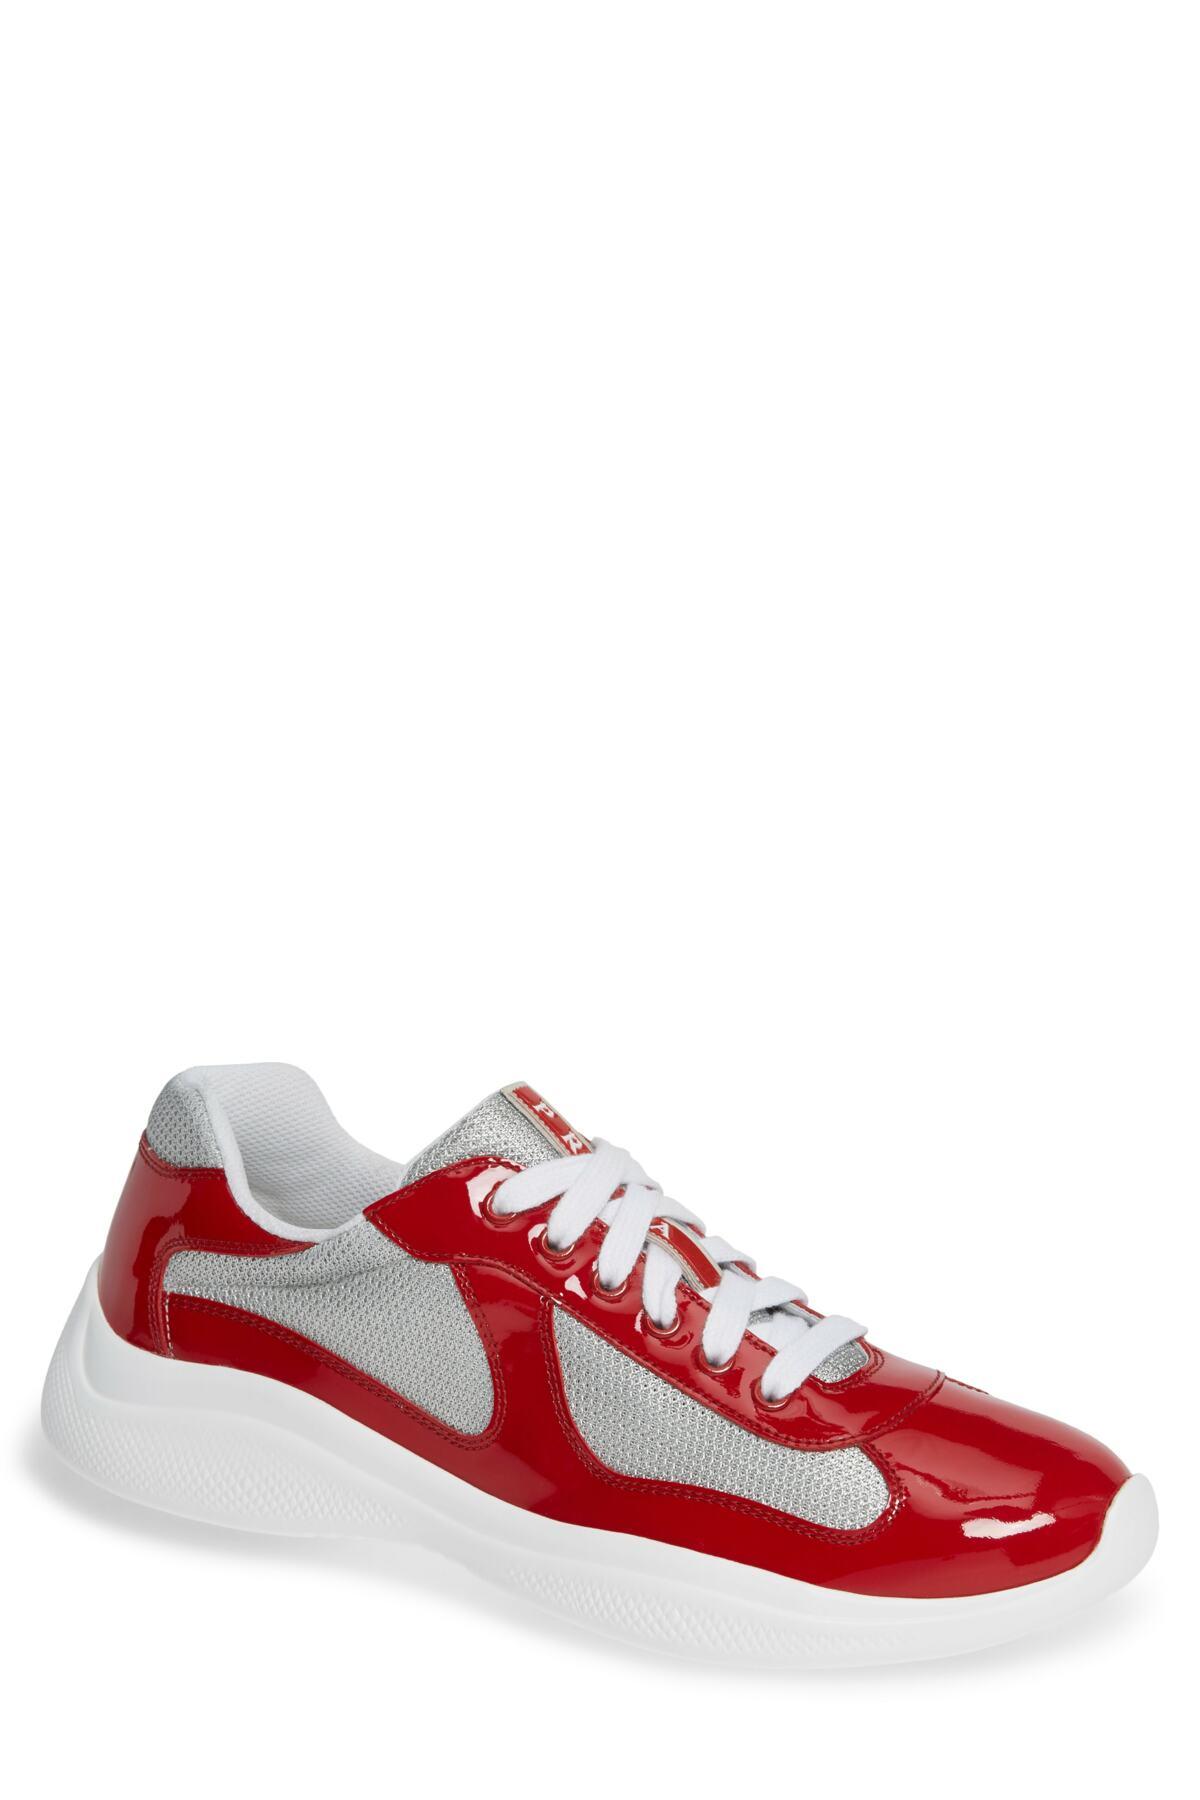 red prada sneakers for men